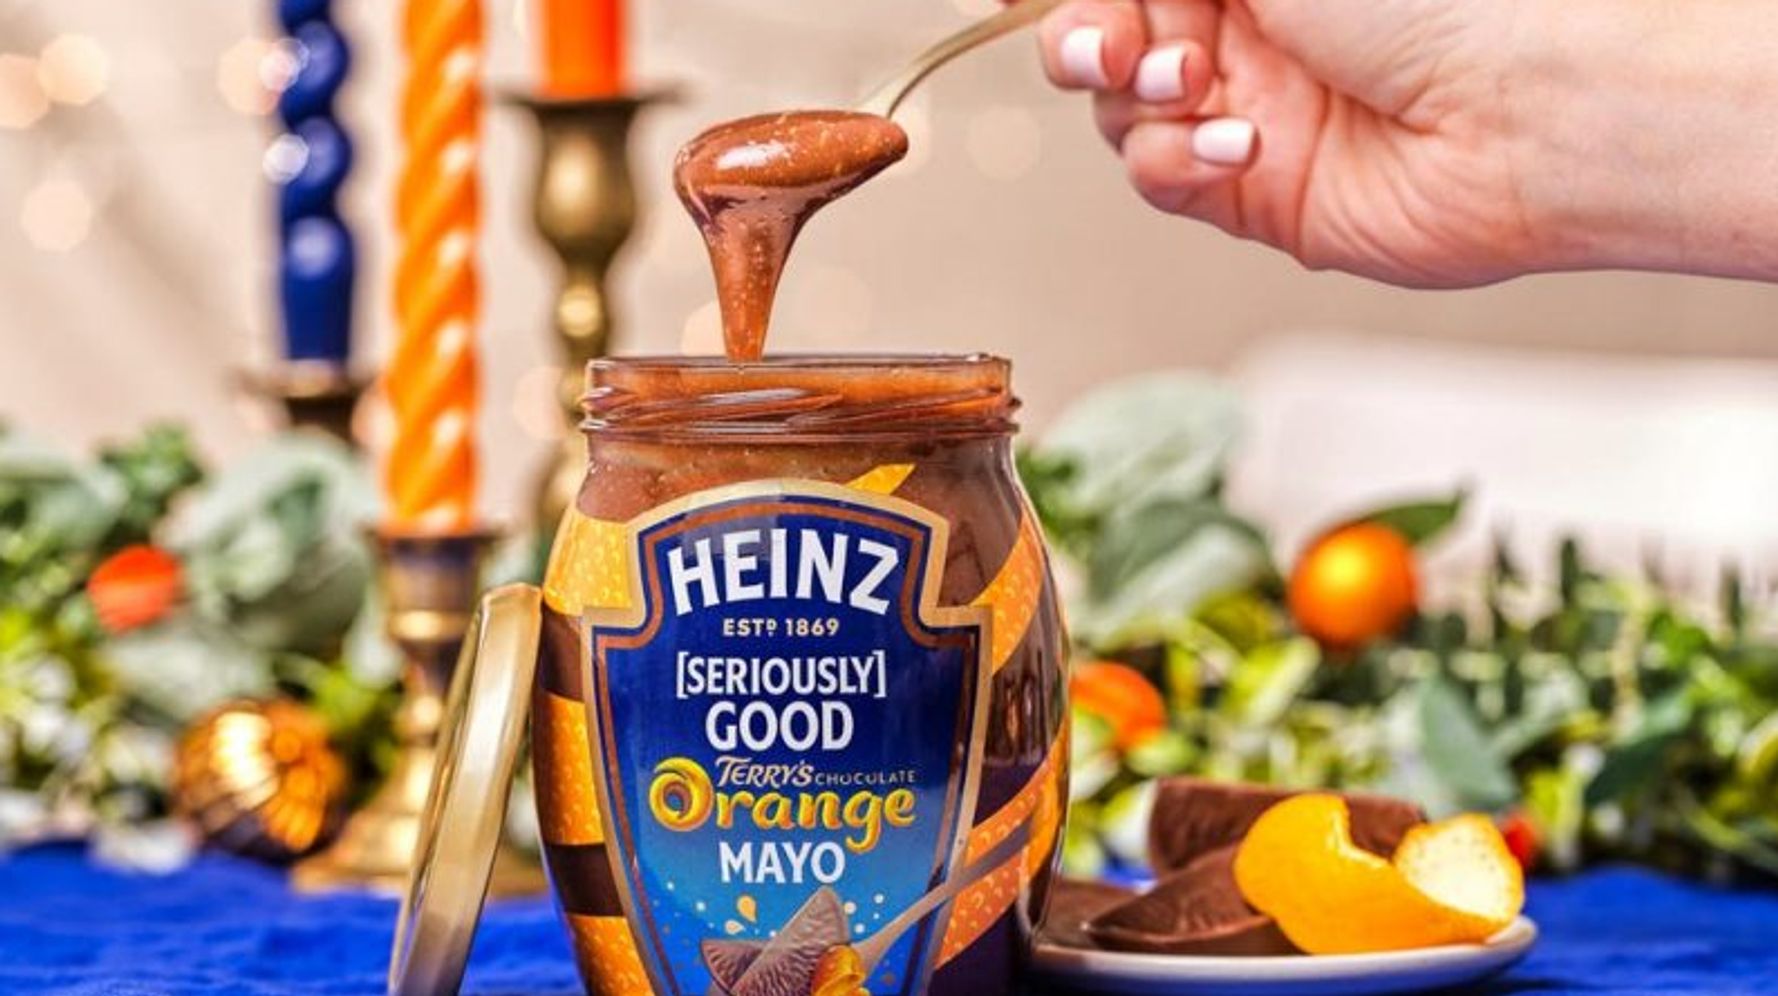 Heinz lance une pâte à tartiner chocolat orange mayo pour Noël et vous allez être outrés